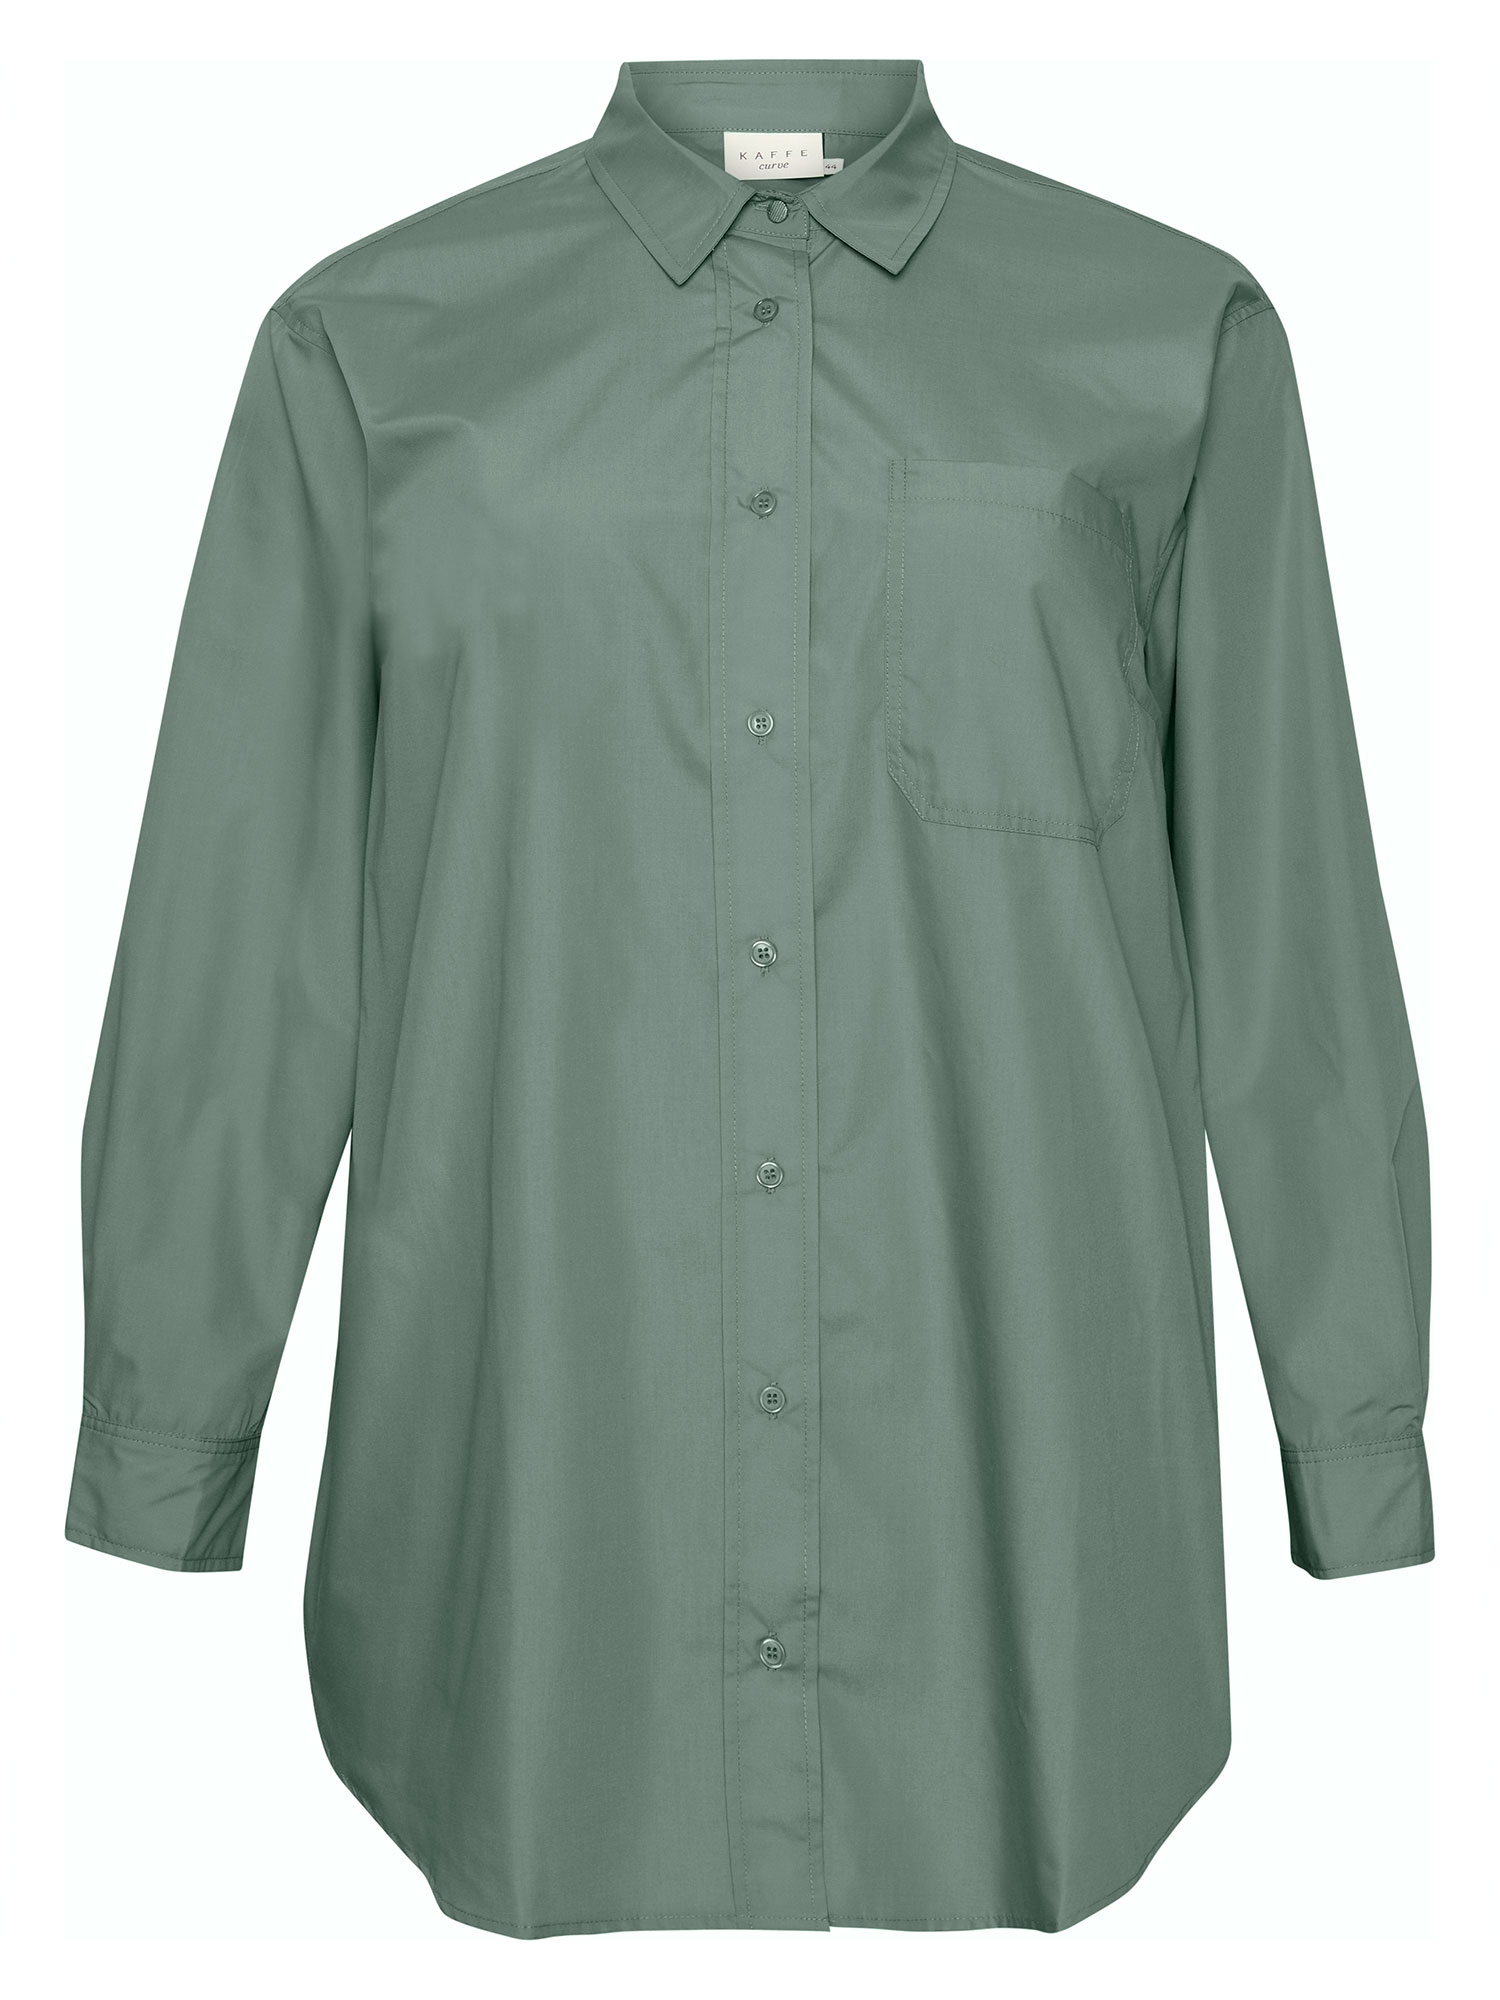 KC LONE - Grøn storskjorte med afrundet bund og ekstra fin manchet fra Kaffe Curve